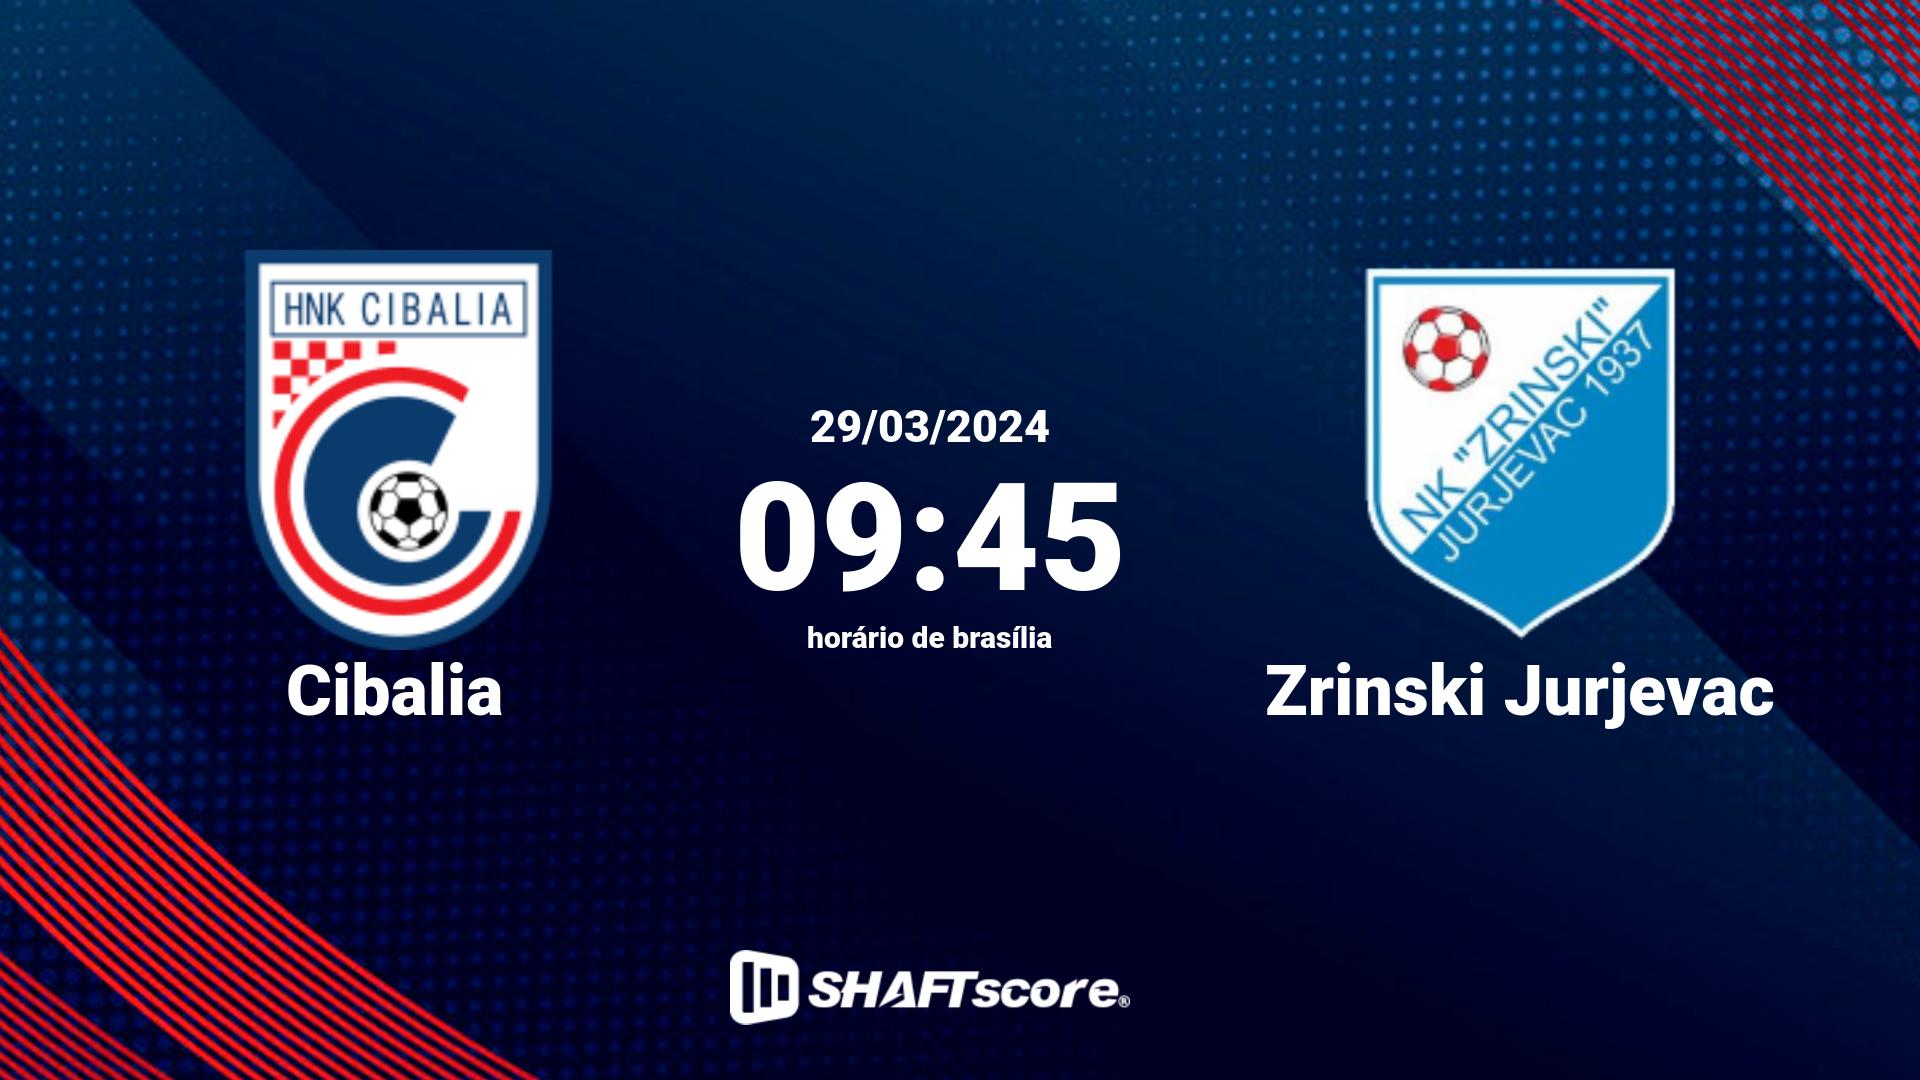 Estatísticas do jogo Cibalia vs Zrinski Jurjevac 29.03 09:45